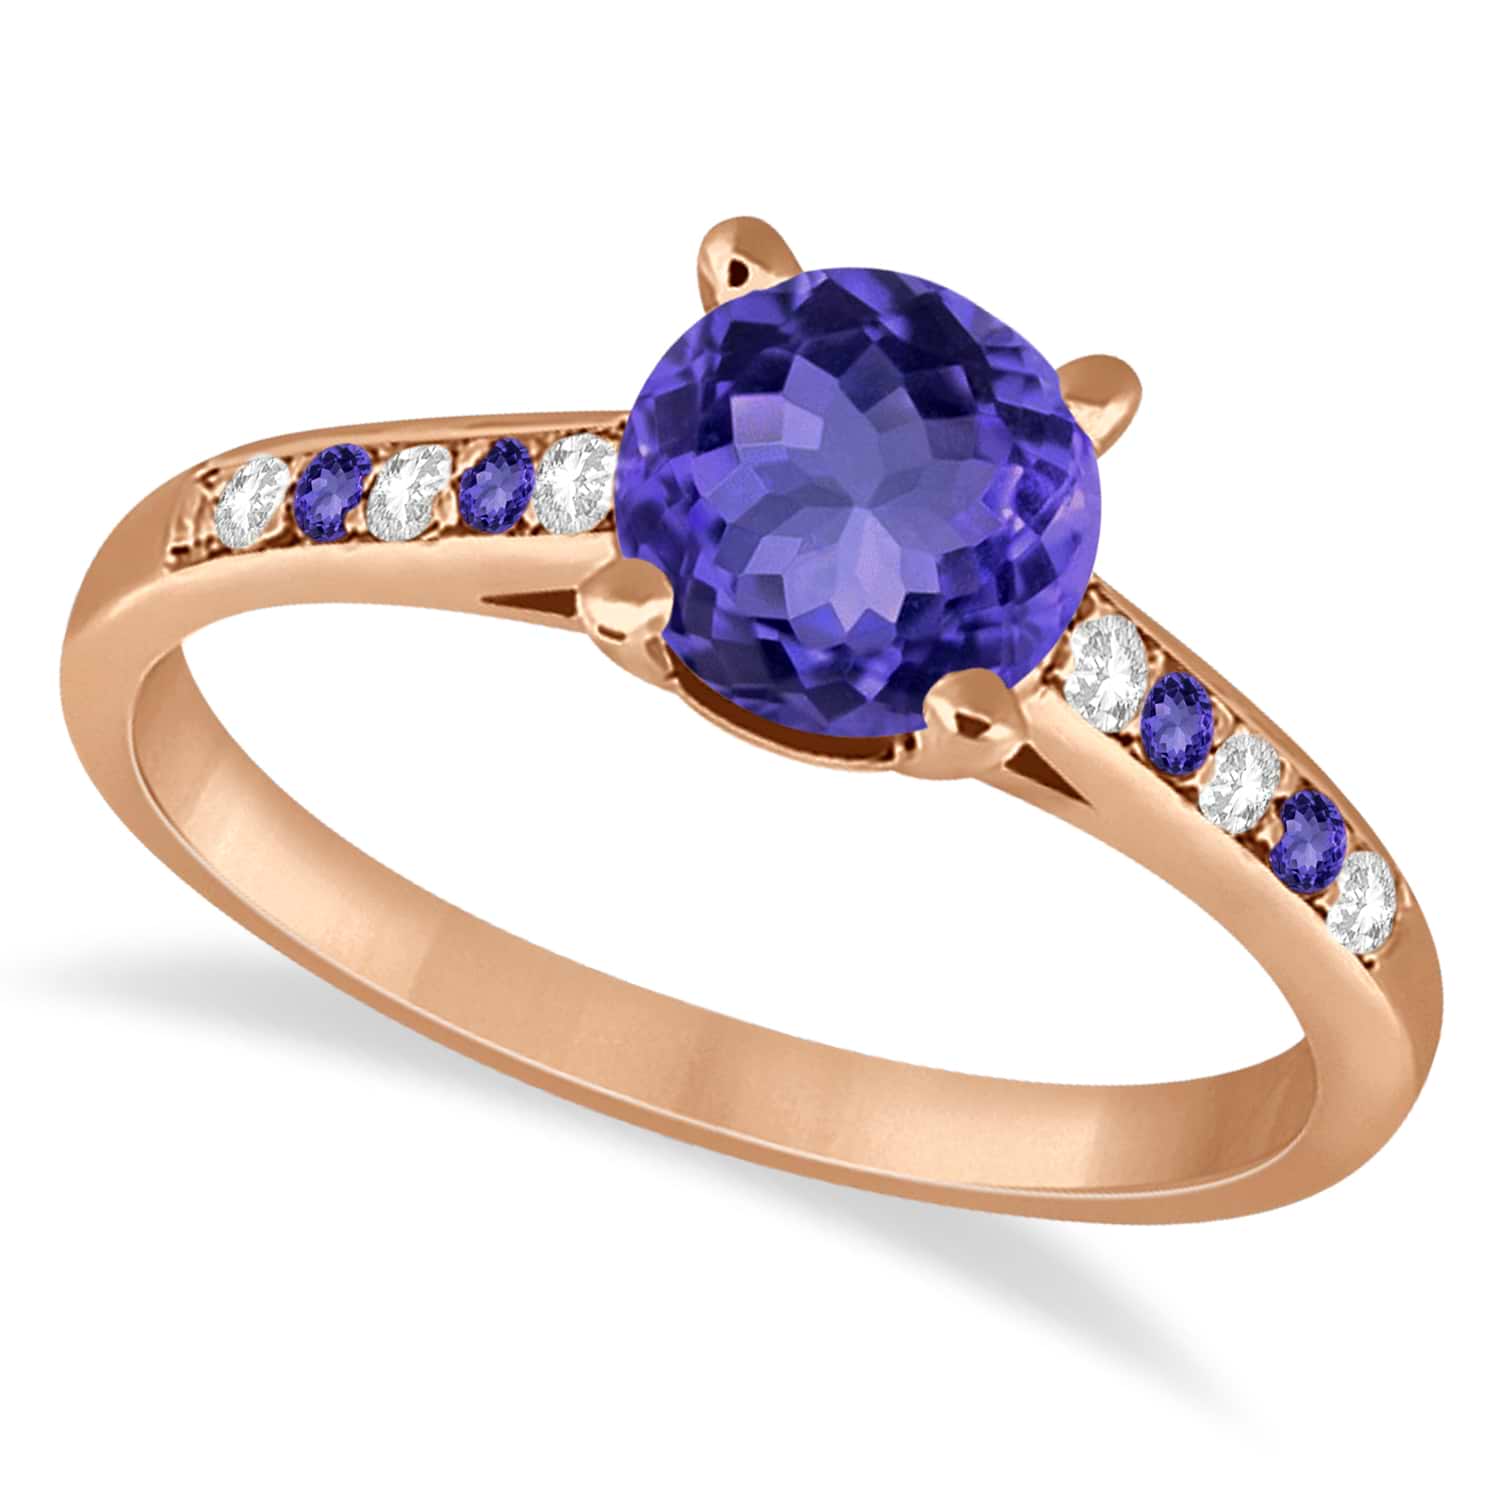 Cathedral Tanzanite & Diamond Engagement Ring 14k Rose Gold (1.20ct)